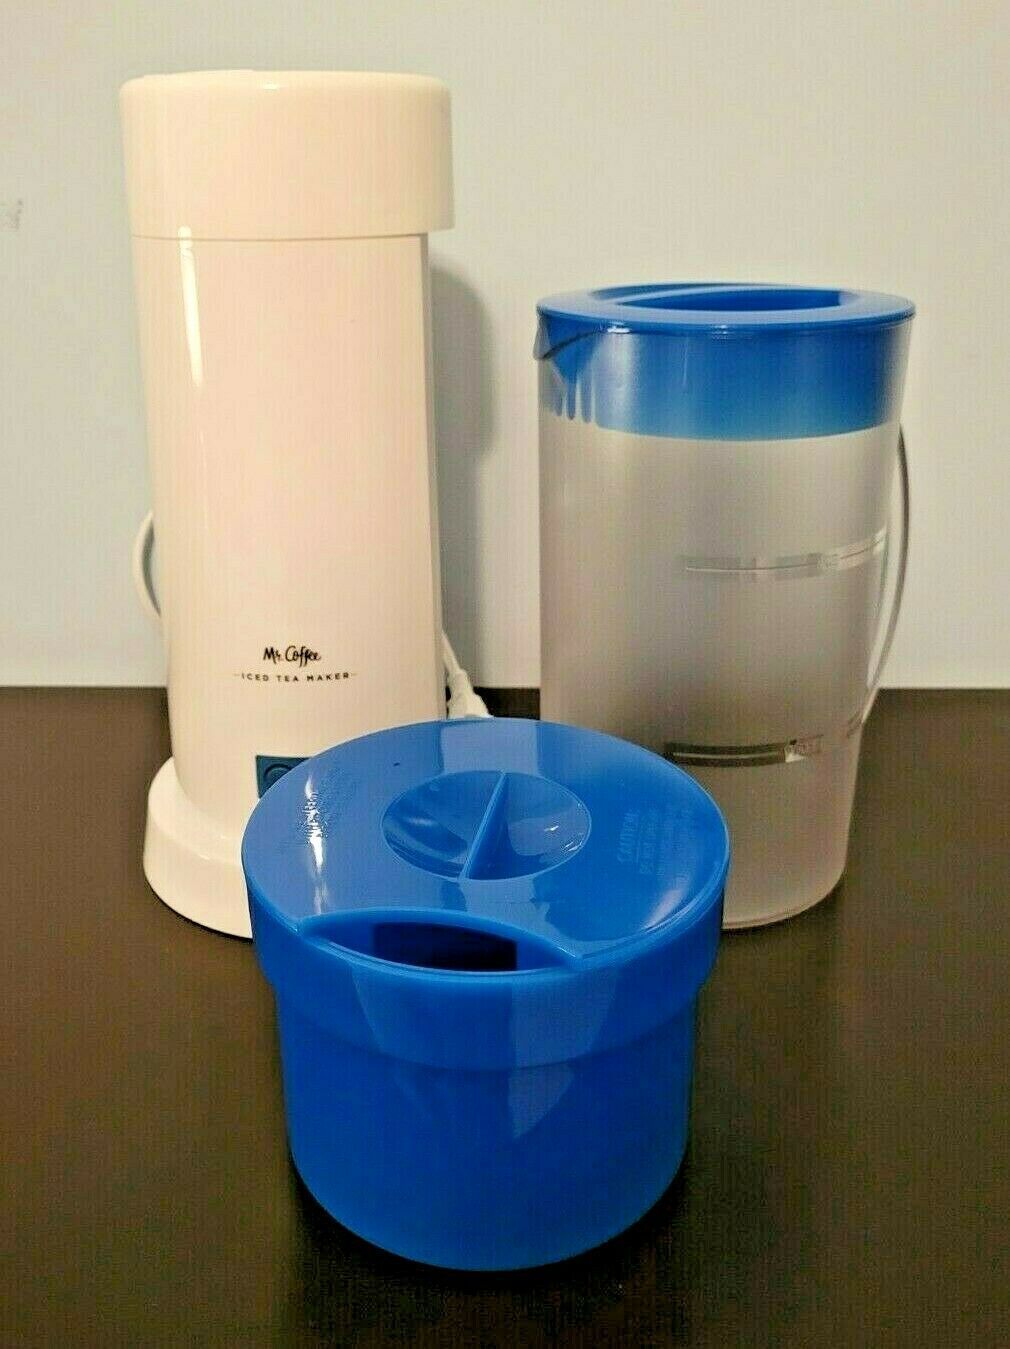 Mr Coffee Ice Tea Maker - Blue 